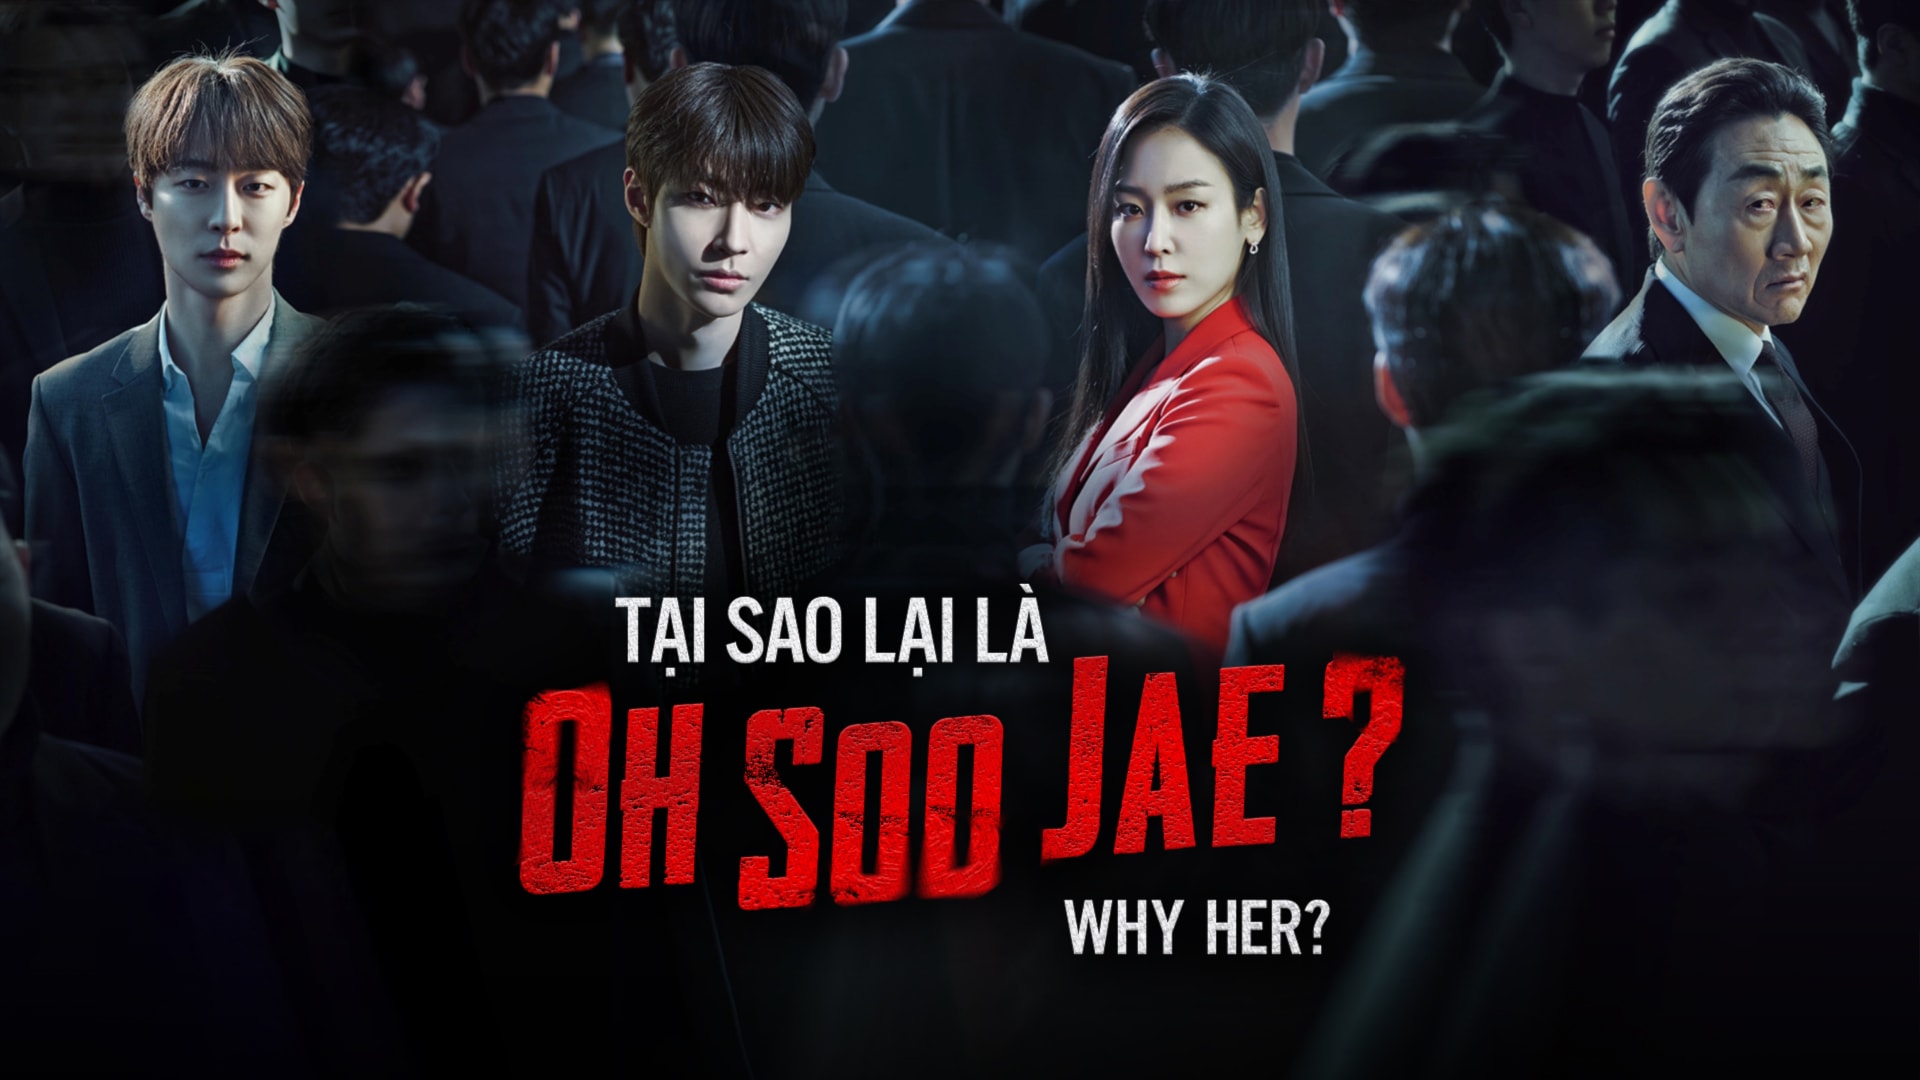 Tại Sao Lại Là Oh Soo Jae?